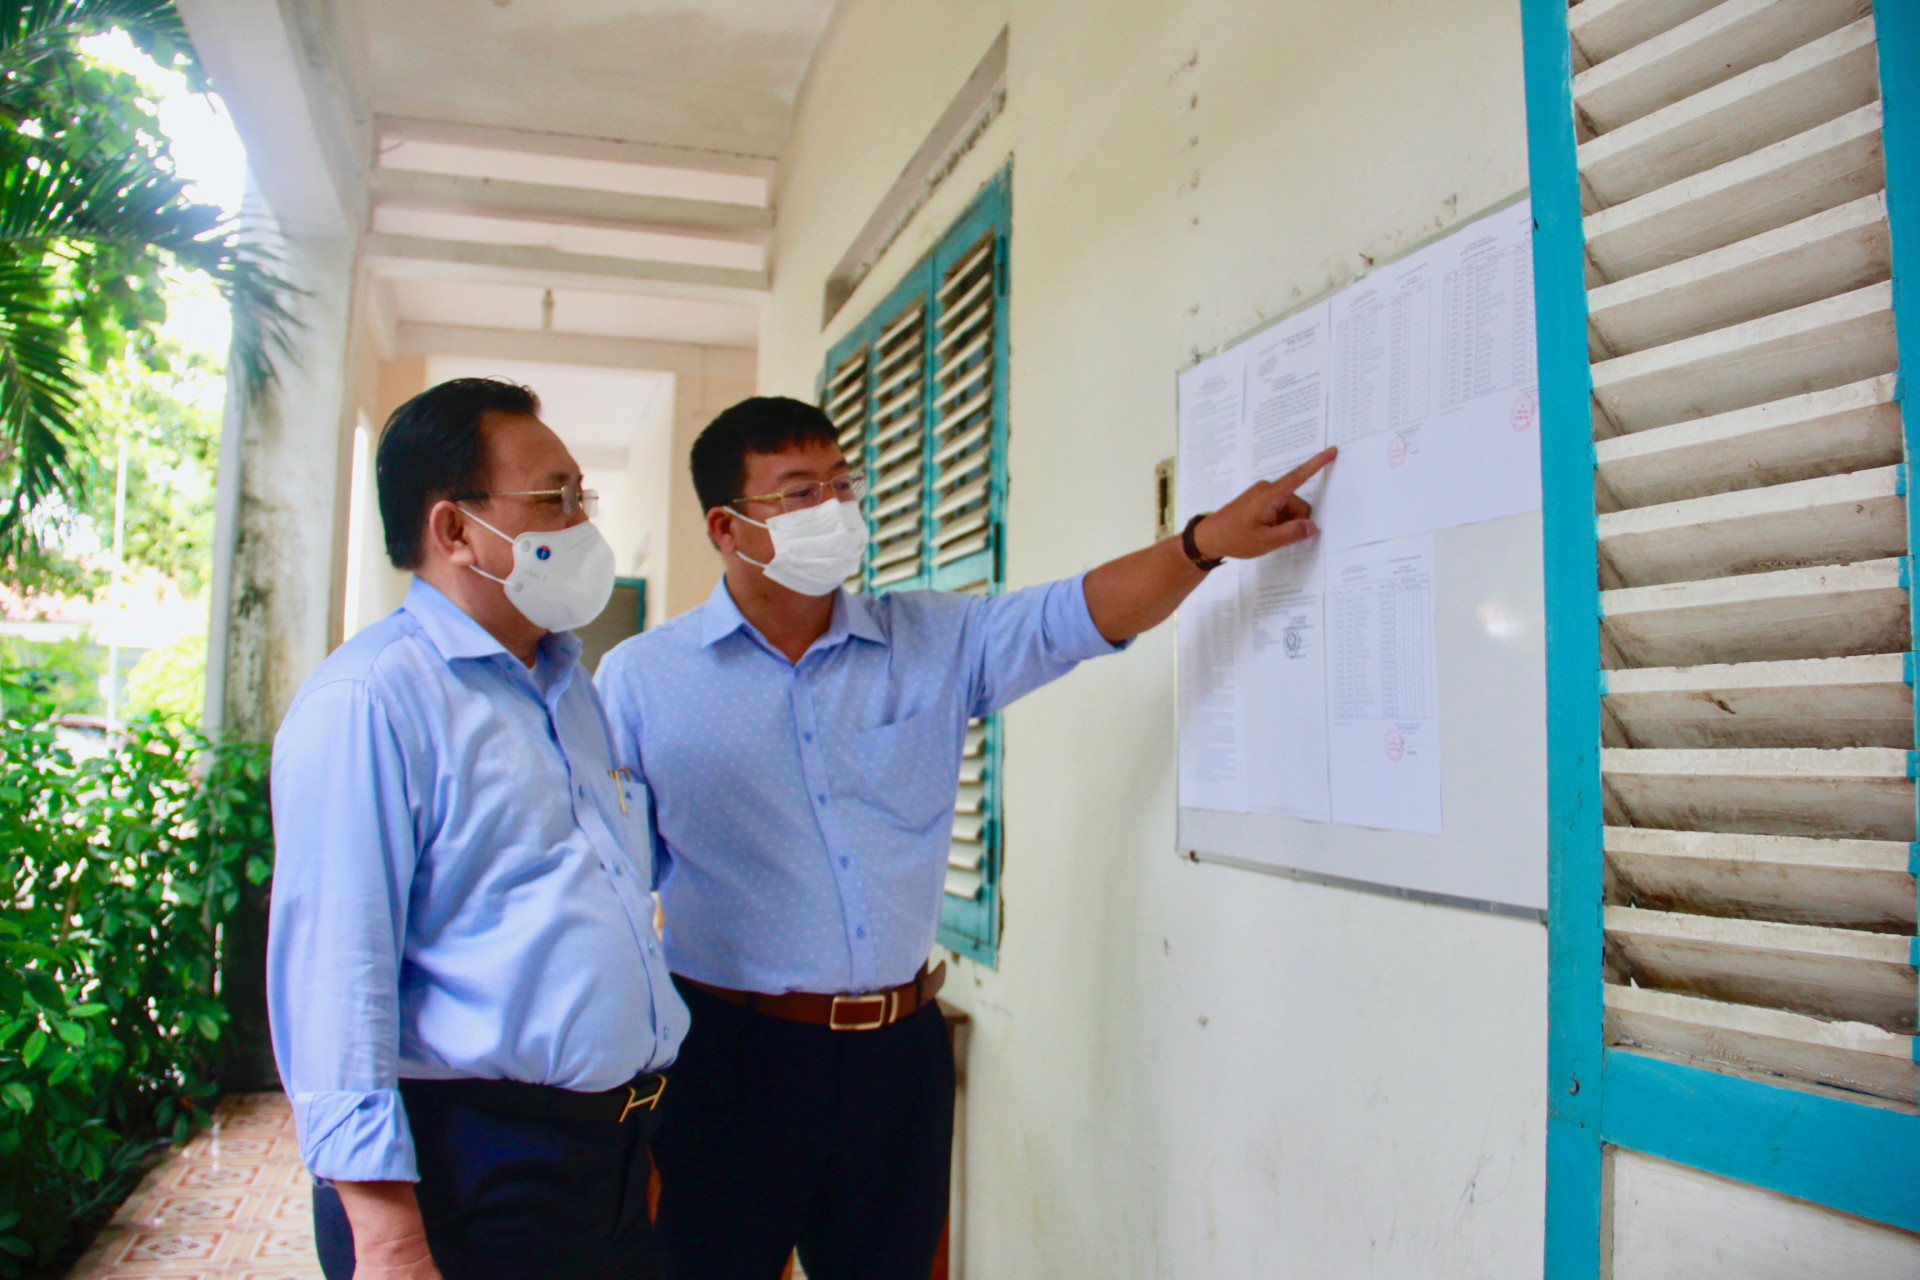 Ông Lê Hữu Hoàng kiểm tra quy định thi được dán trước phòng thi tại điểm thi trường THPT Lạc Long Quân, huyện Khánh Vĩnh.